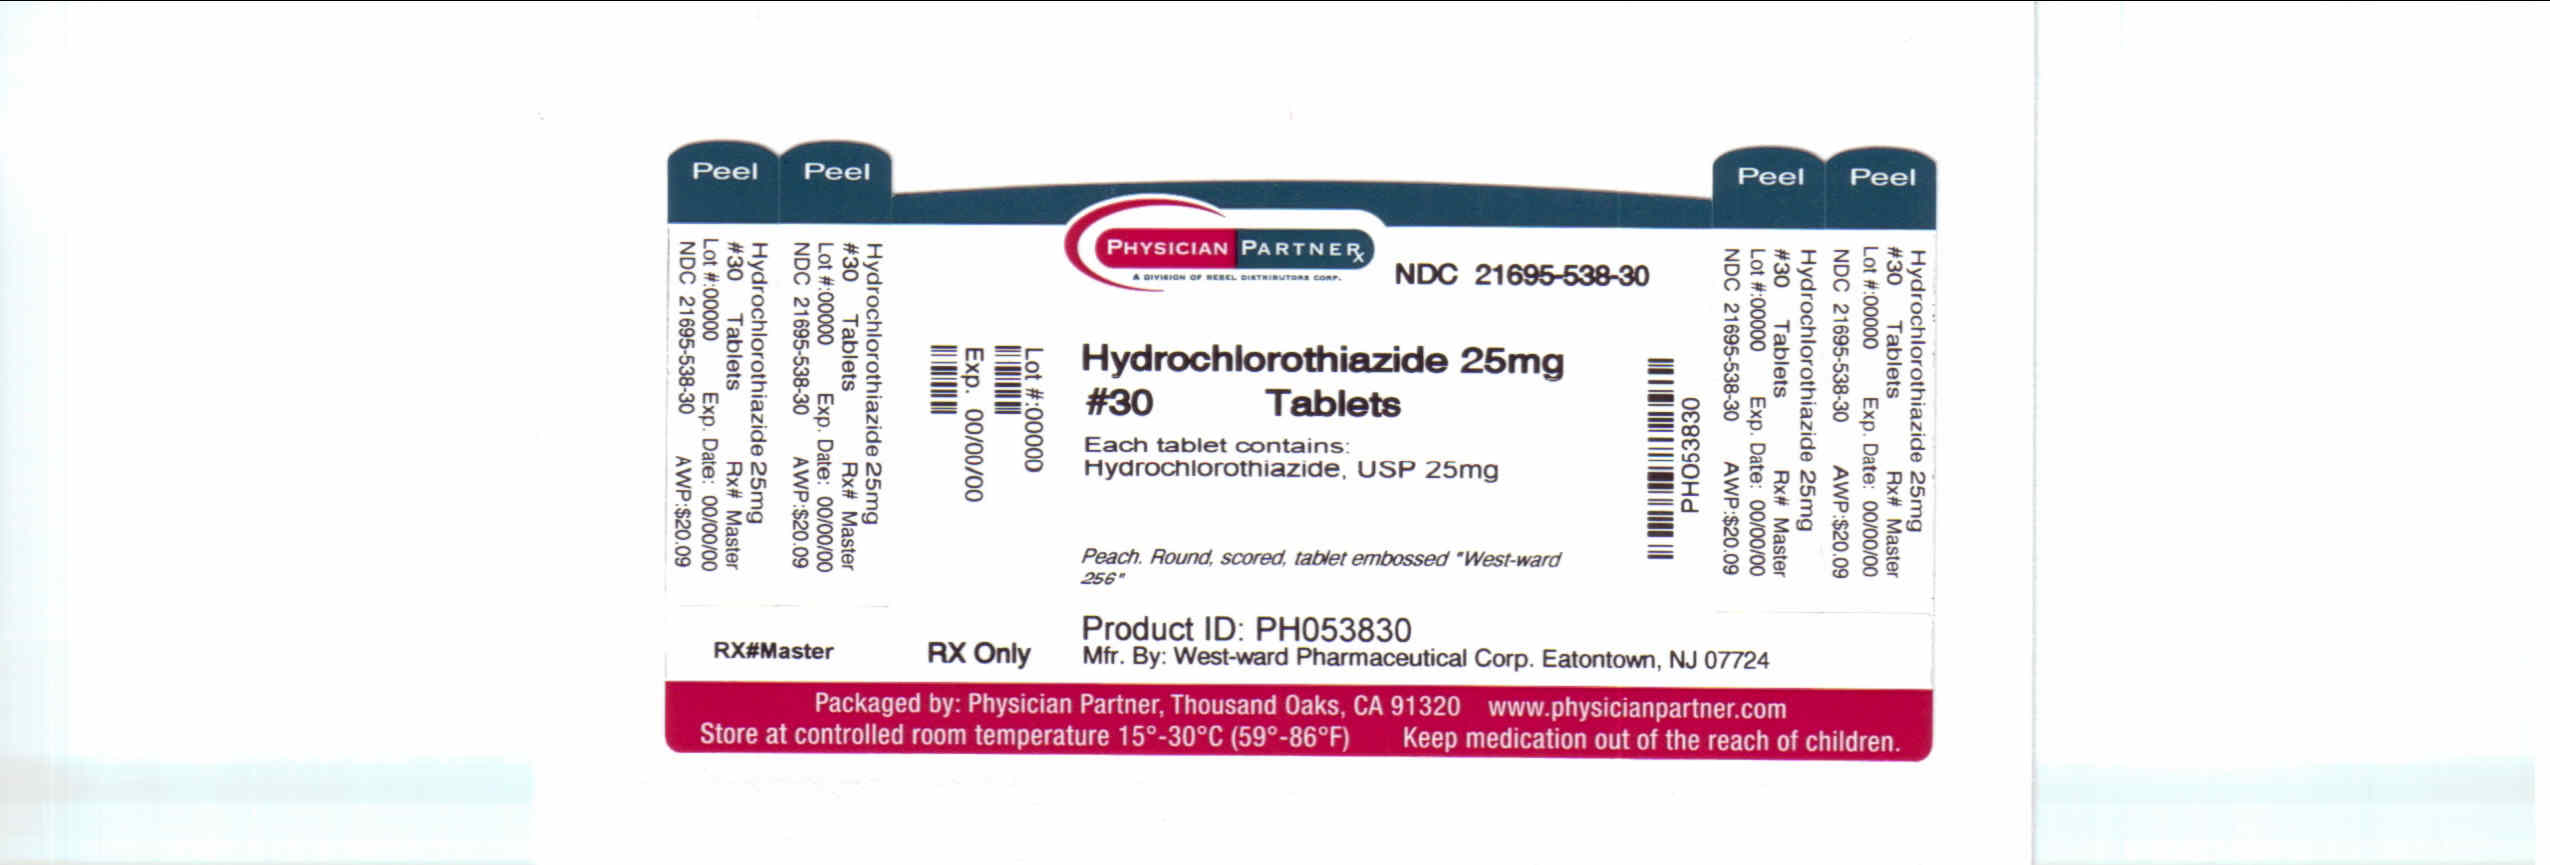 Hydrochlorothiazide 25mg